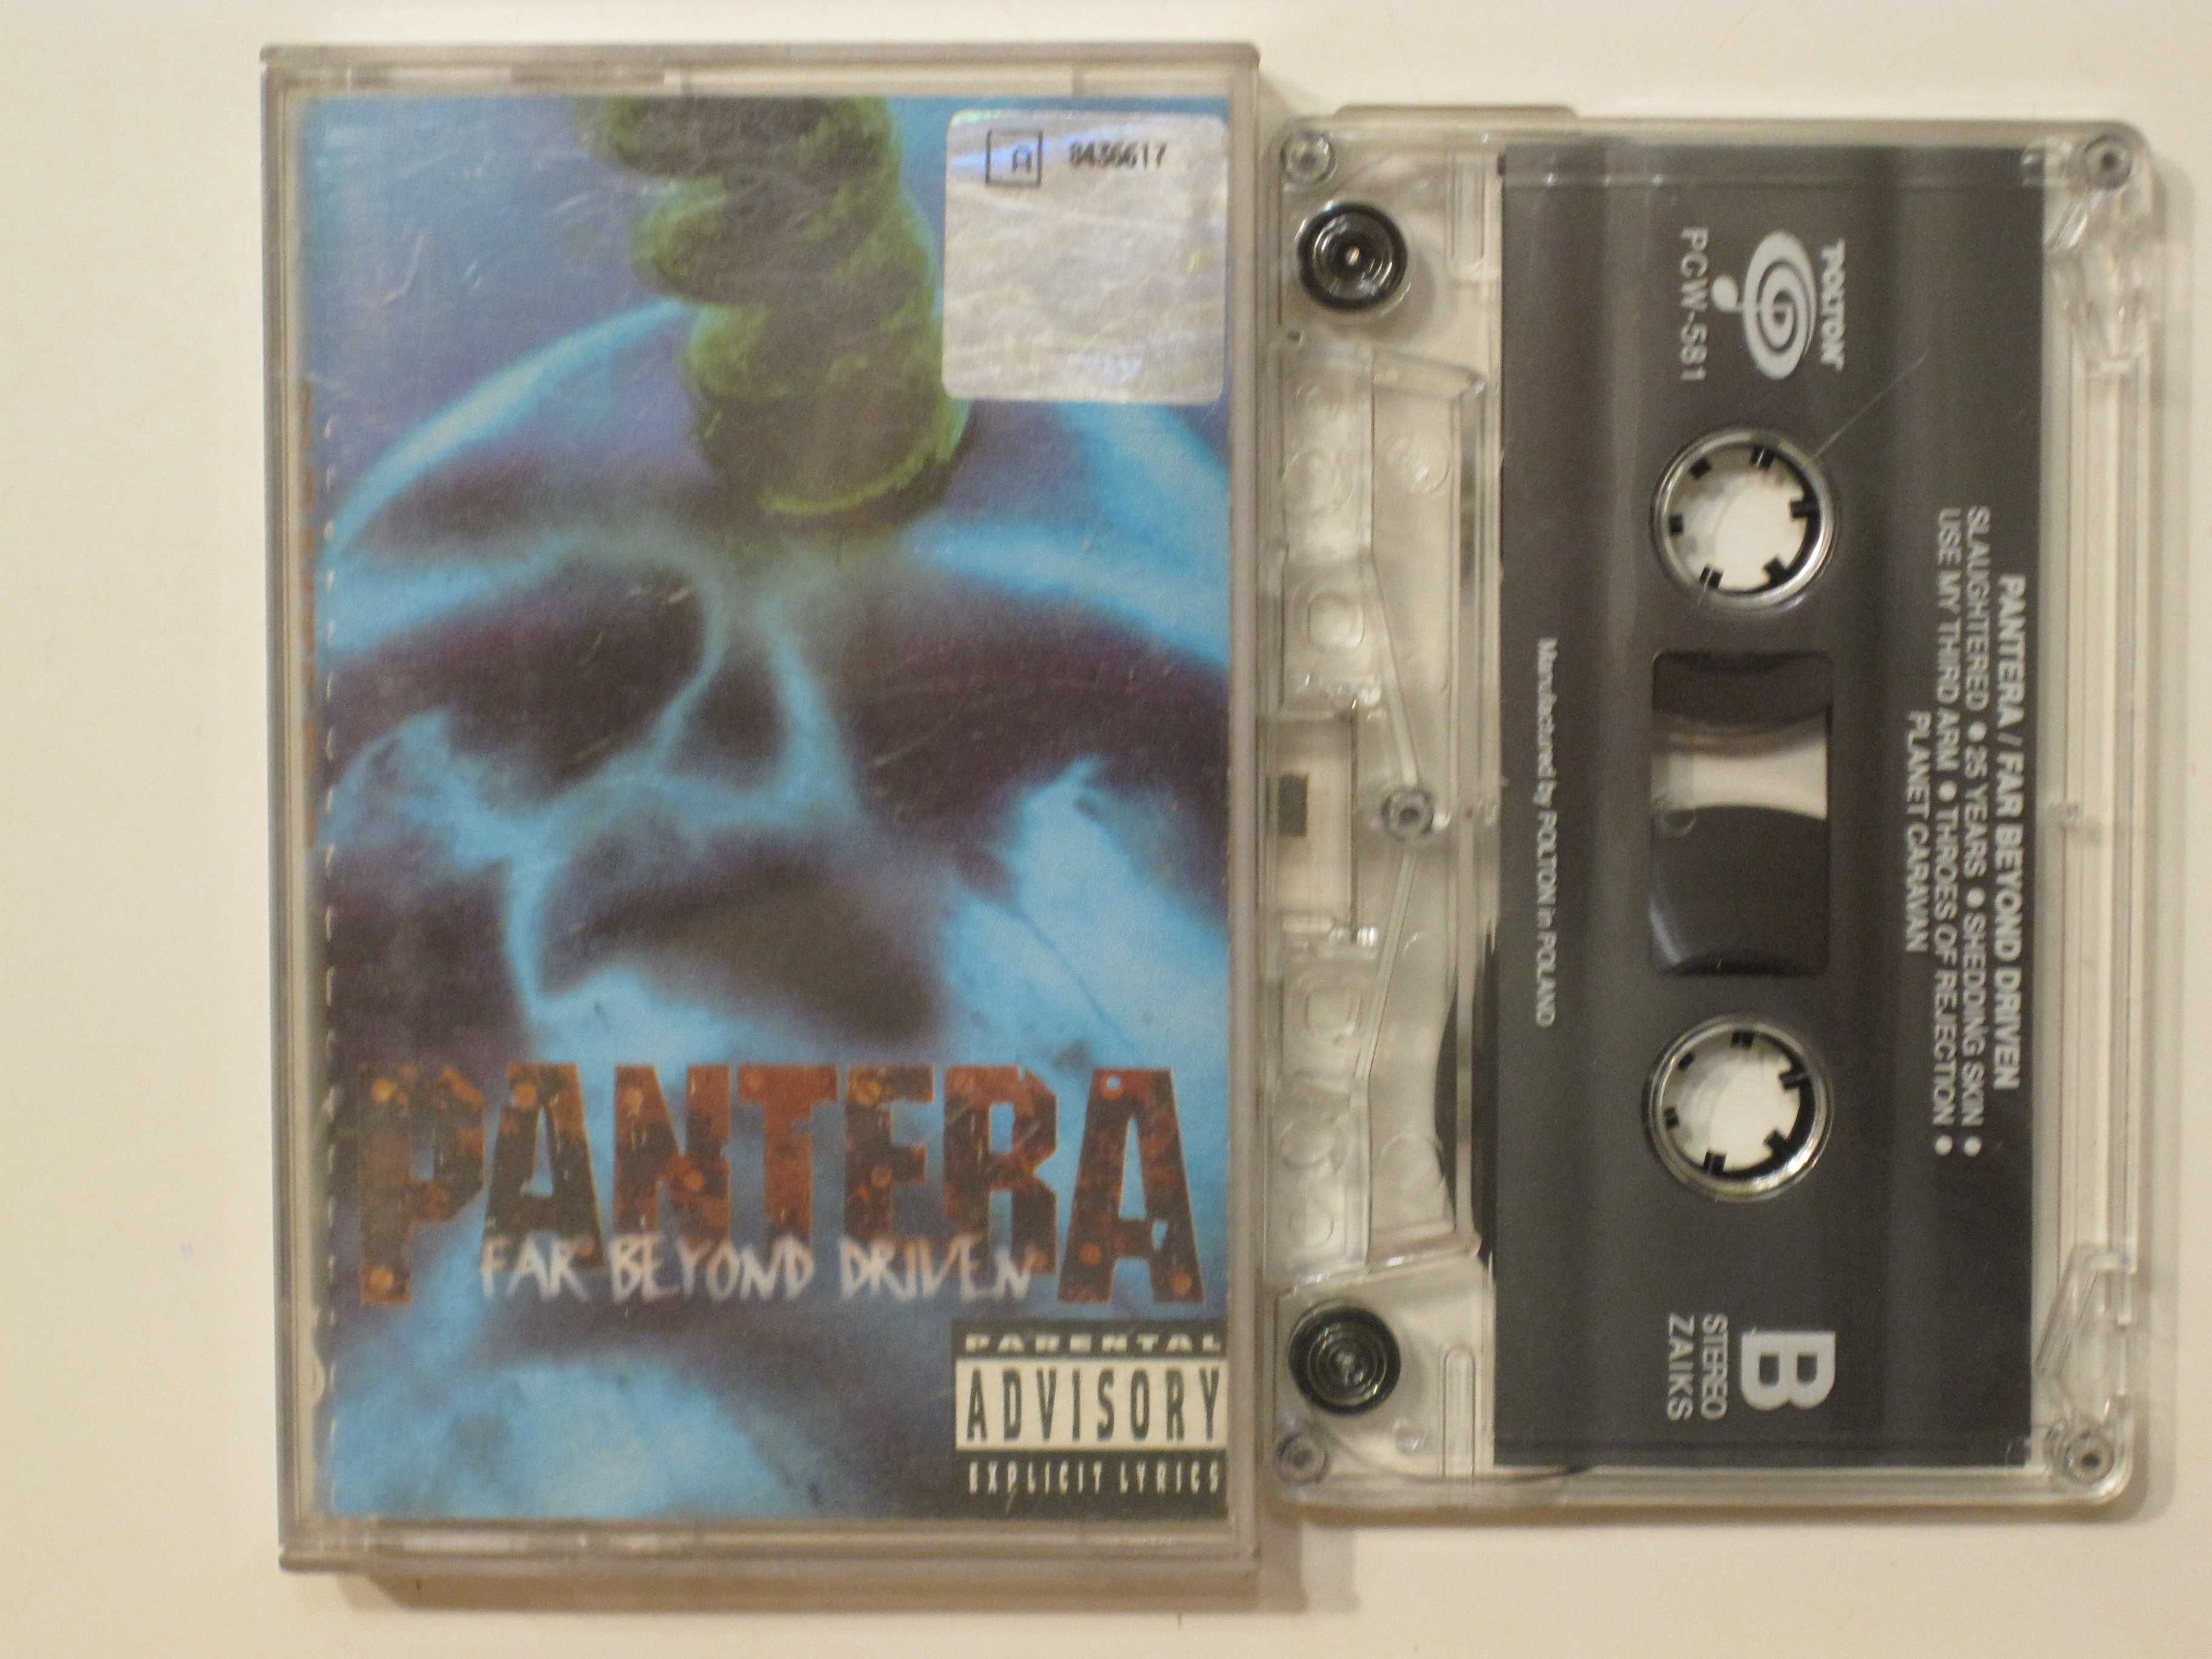 Kaseta Pantera album "Far beyond driven" - oryginał - wydanie 1994 rok